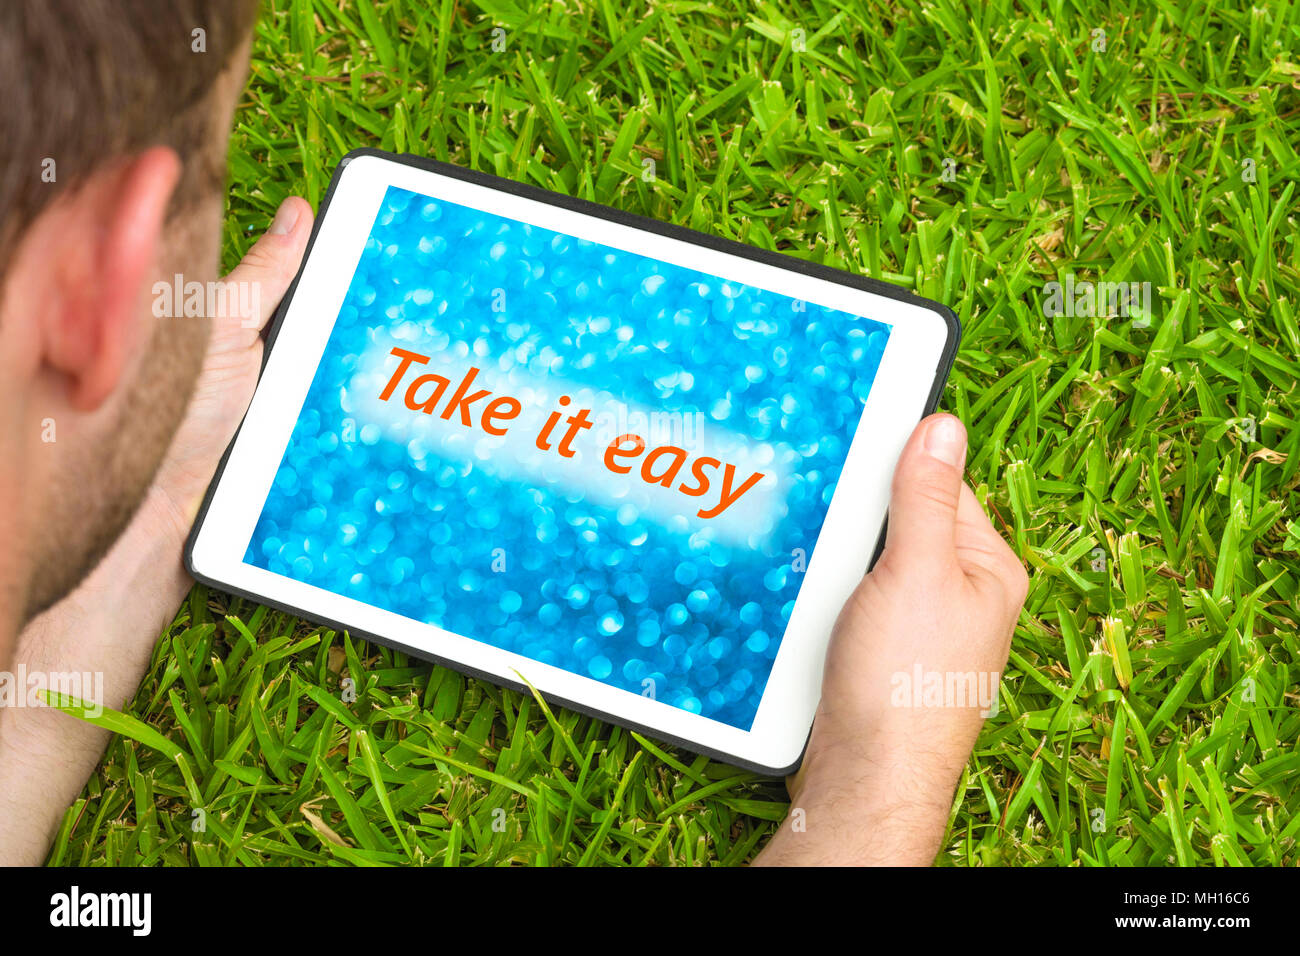 Giovane uomo disteso su erba in giardino con dispositivo tablet guardando sfocato sfondo blu con la frase "Take it easy' scritto su di esso. Foto Stock